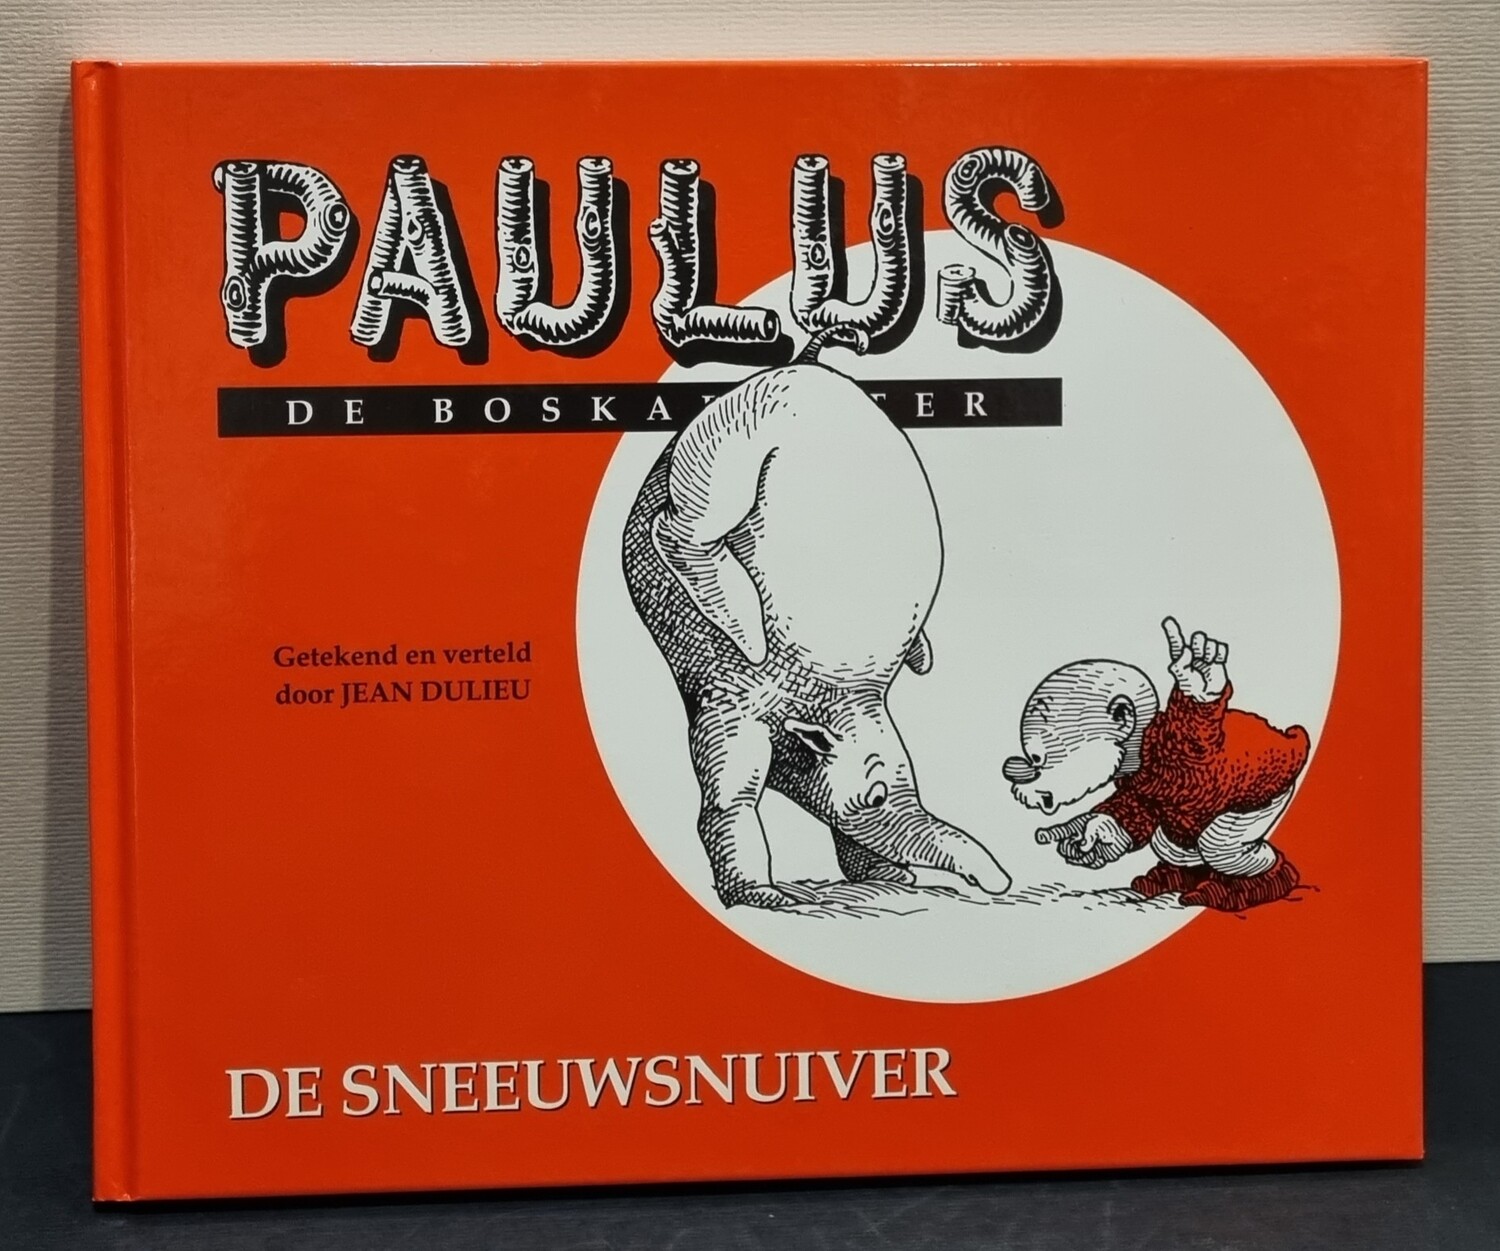 Paulus de Boskabouter. (Voorlees) Boek nr. 10, "De Sneeuw snuiver", Jean Dulieu